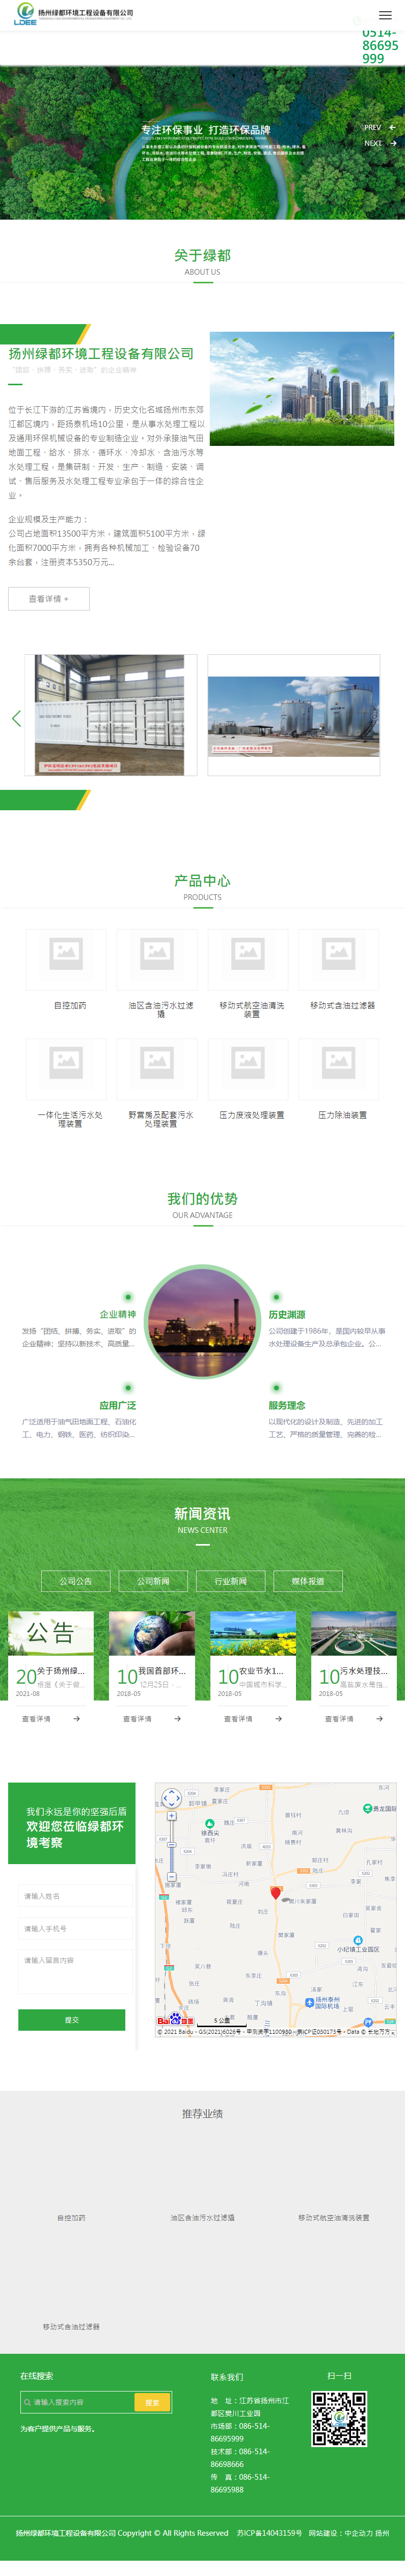 扬州绿都环境工程设备有限公司网站案例